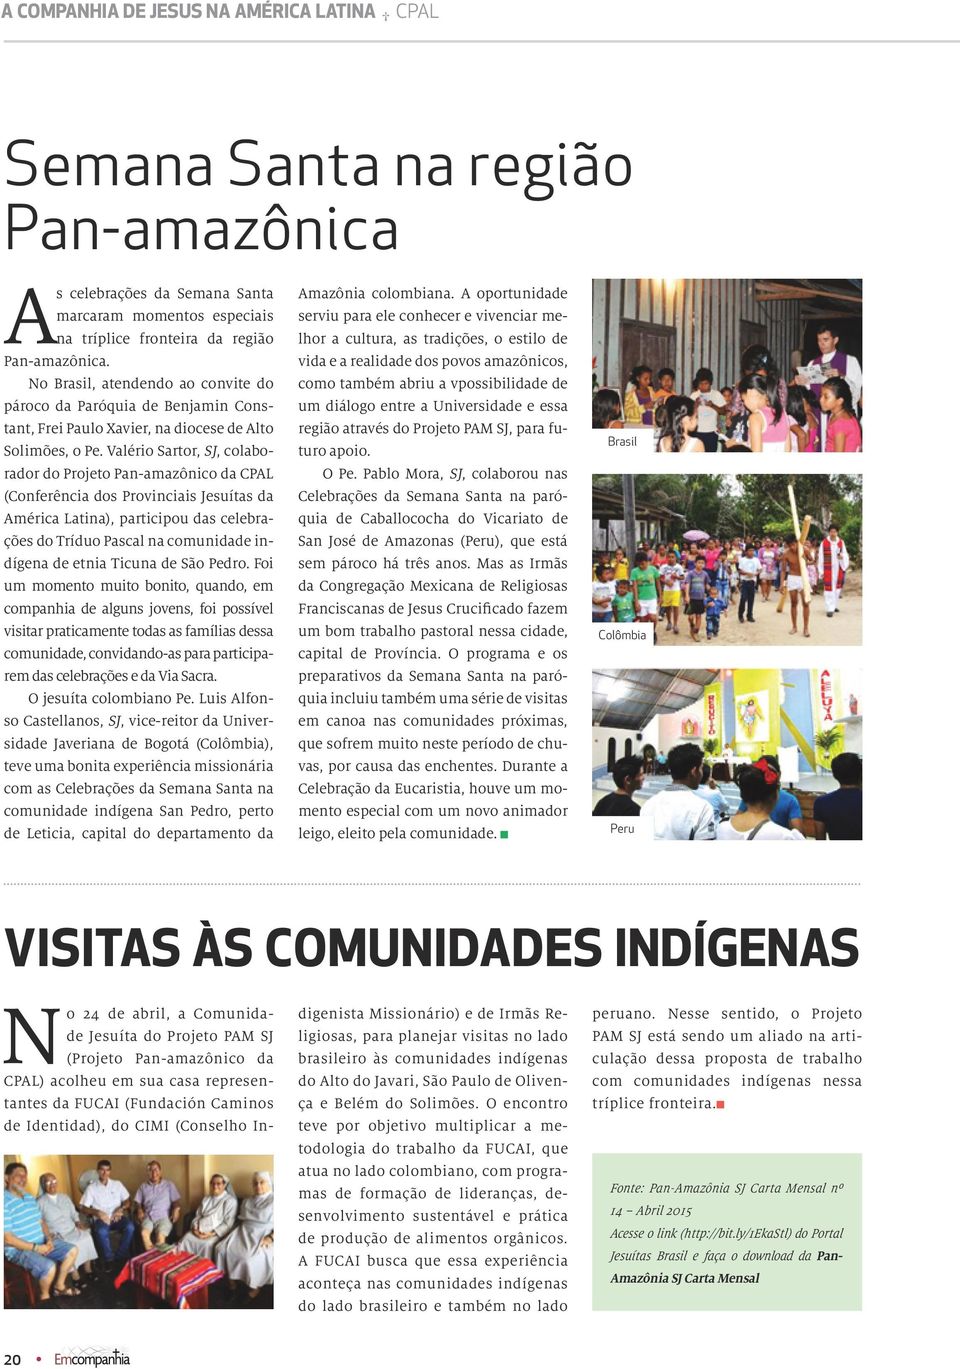 Valério Sartor, SJ, colaborador do Projeto Pan-amazônico da CPAL (Conferência dos Provinciais Jesuítas da América Latina), participou das celebrações do Tríduo Pascal na comunidade indígena de etnia